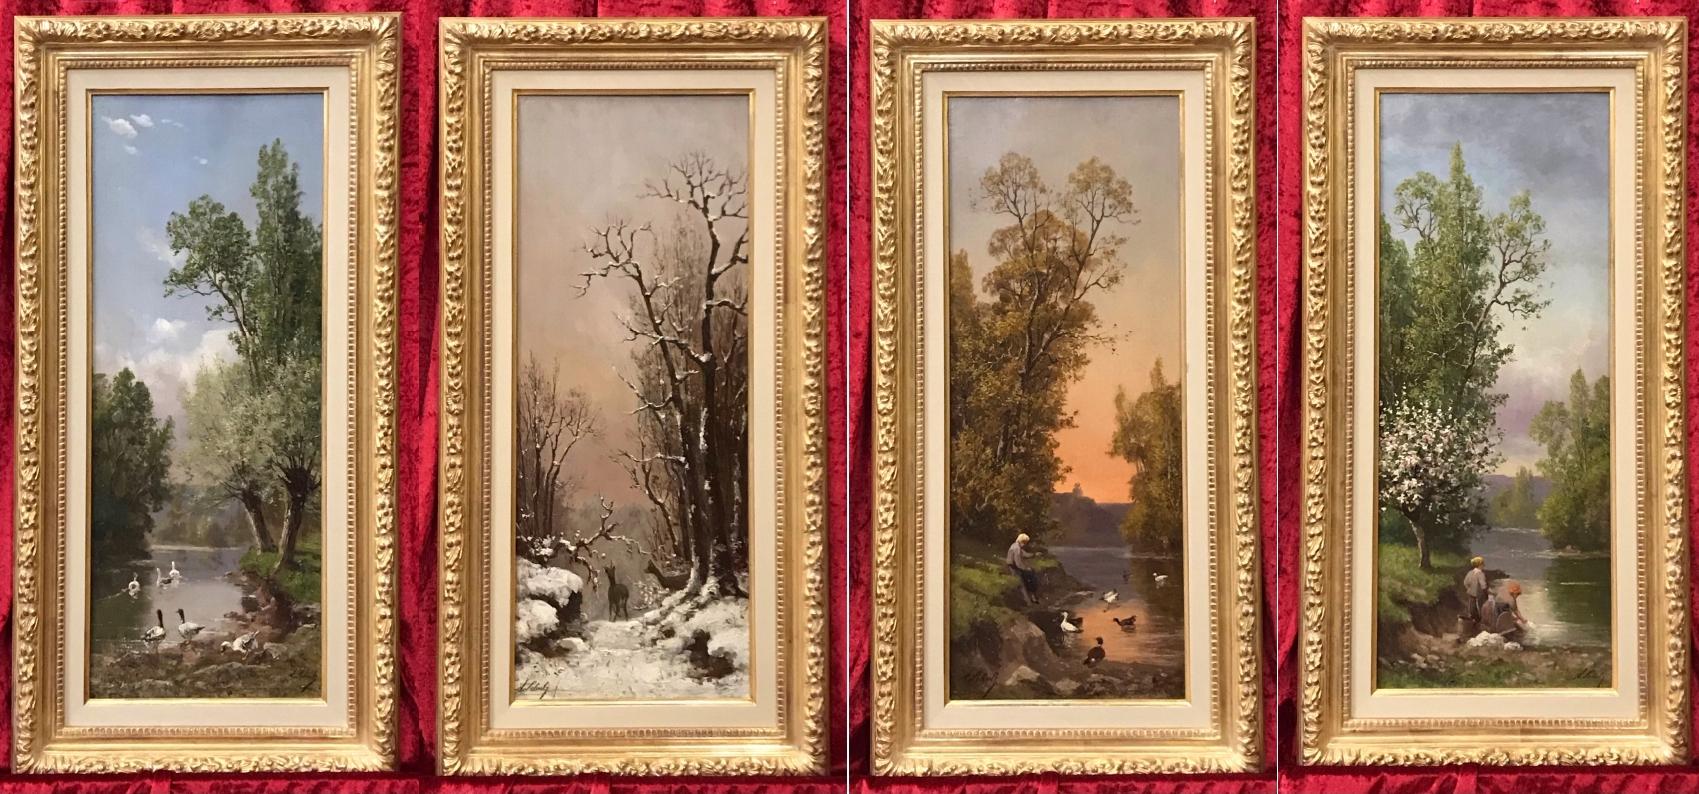 The Four Seasons - Four Original Paintings 19th Century